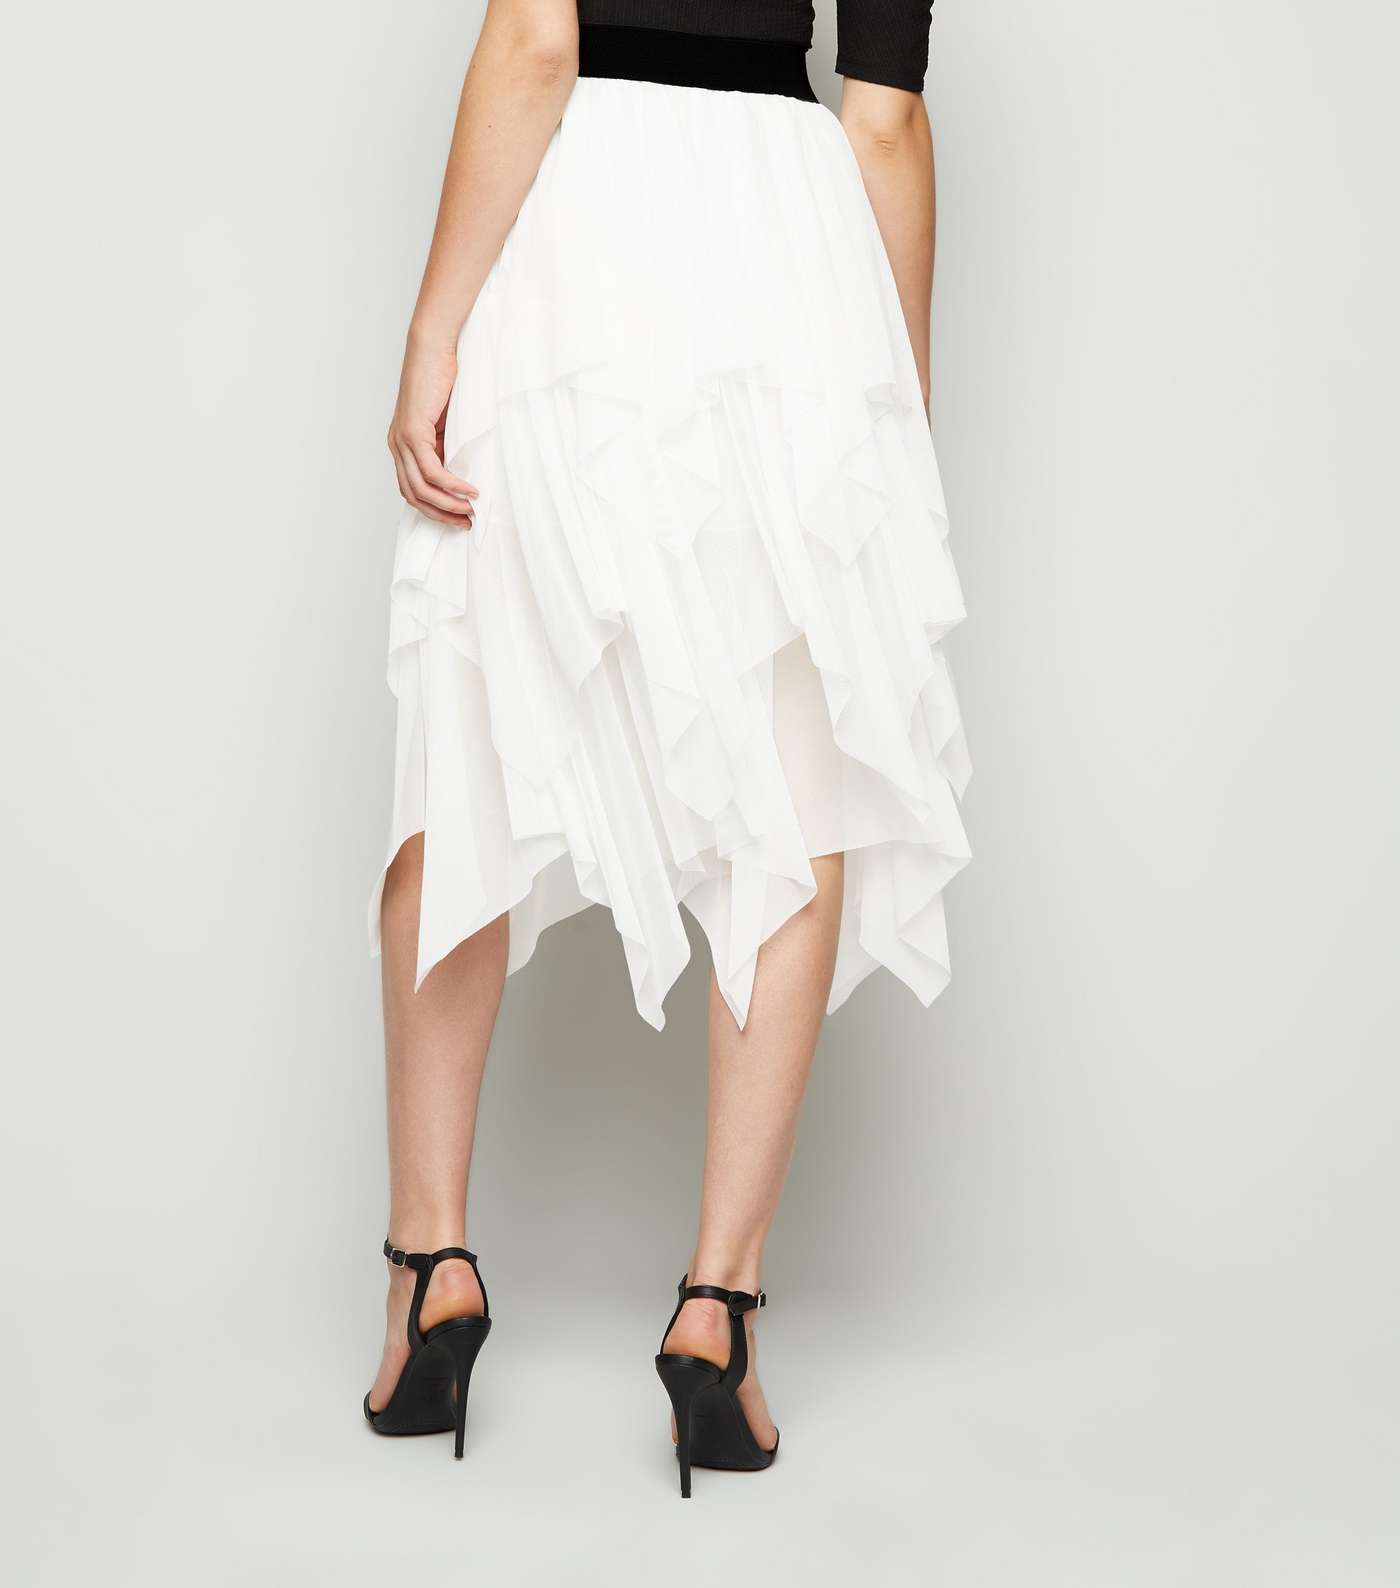 Cameo Rose White Tiered Mesh Midi Skirt Image 3